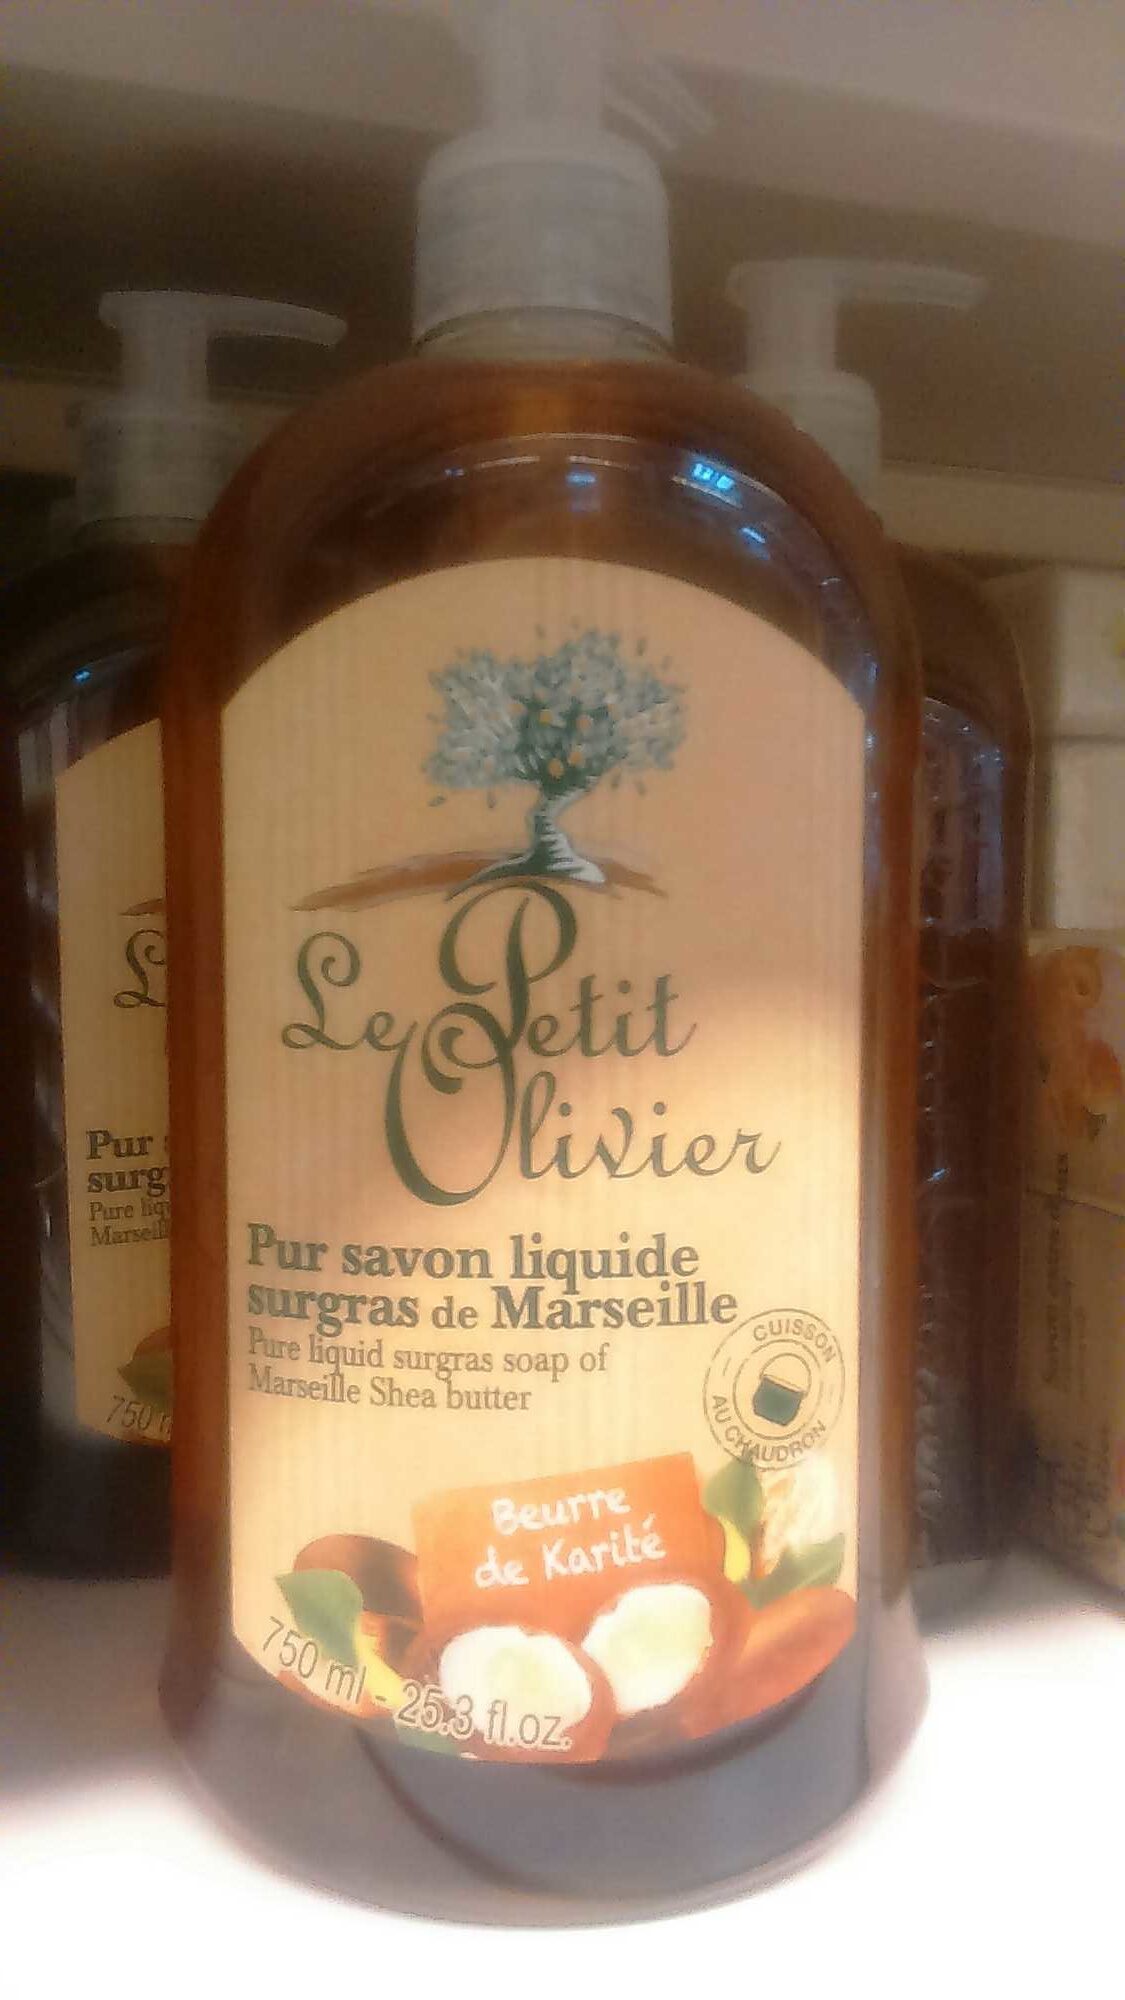 Pur savon liquide surgras de Marseille beurre de karité - Product - fr